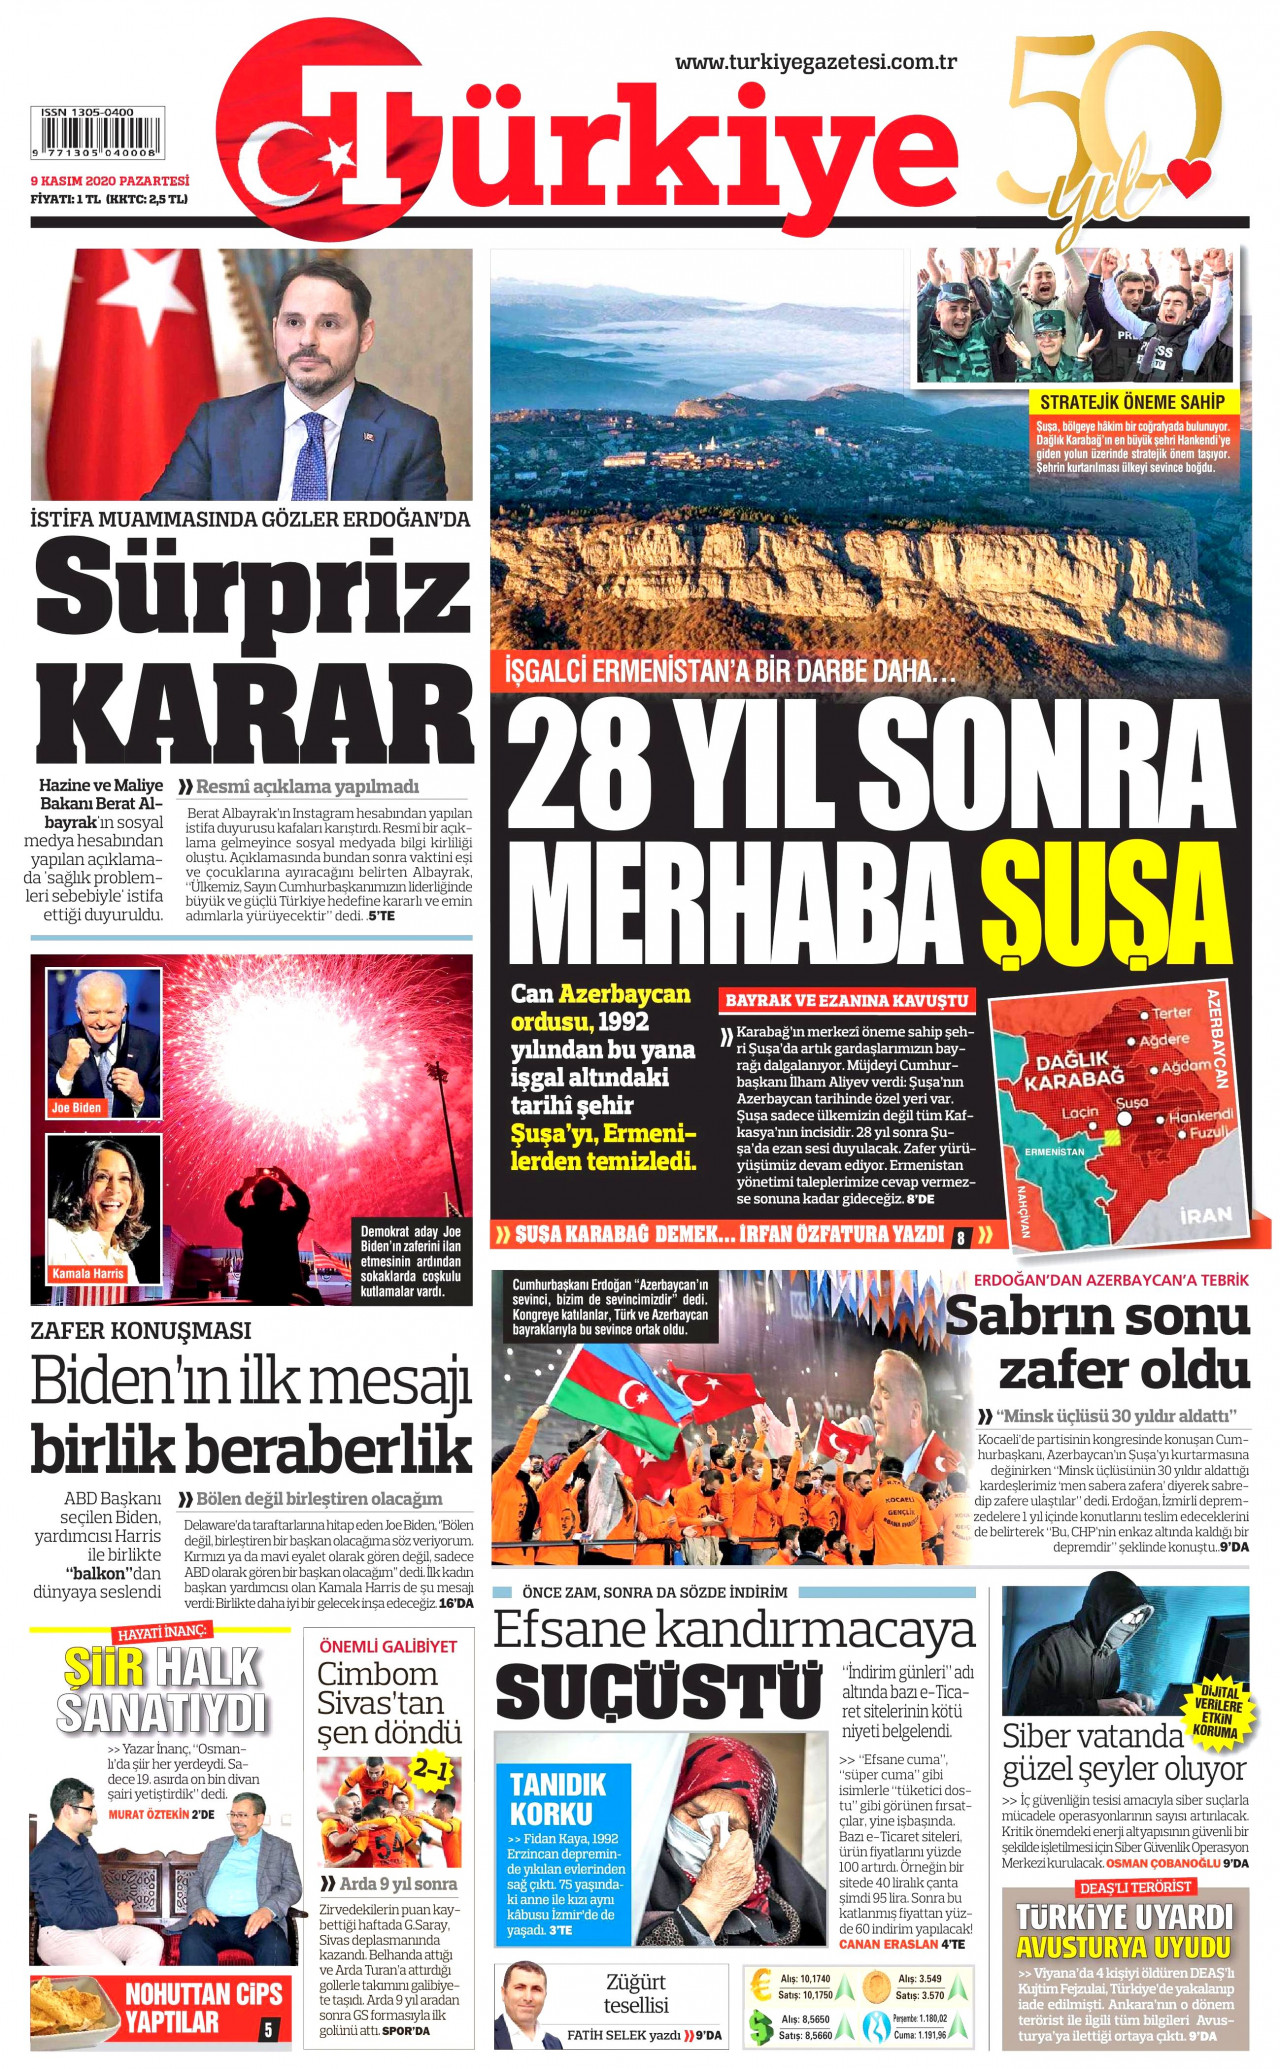 Hükümet çizgisindeki Türkiye Gazetesi'nden istifaya ilişkin iddia